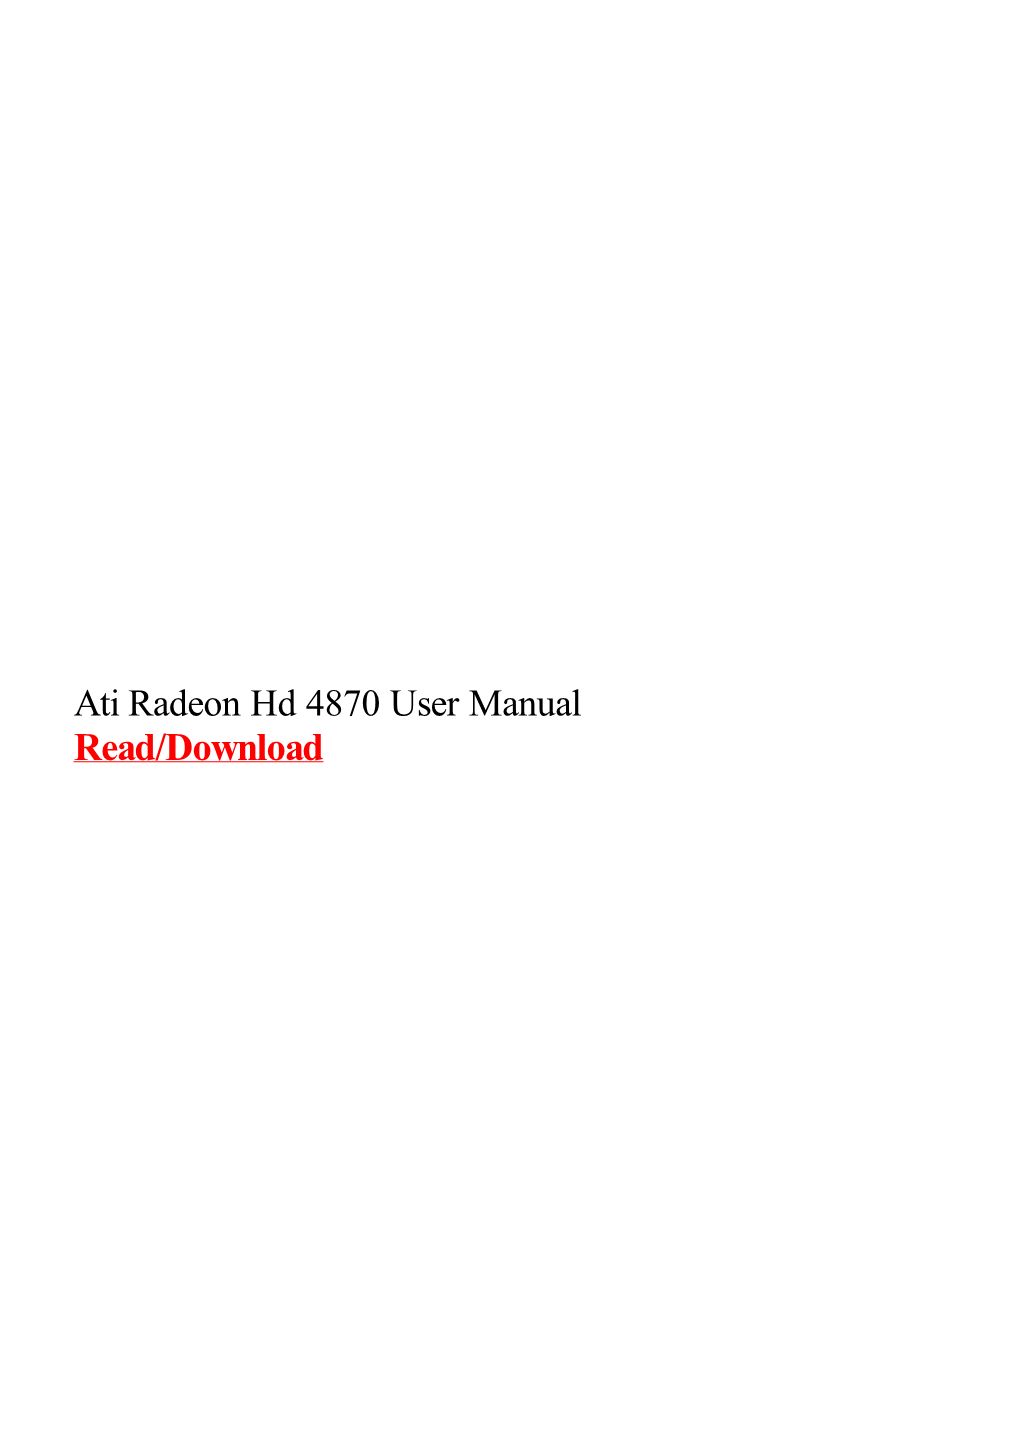 Ati Radeon Hd 4870 User Manual